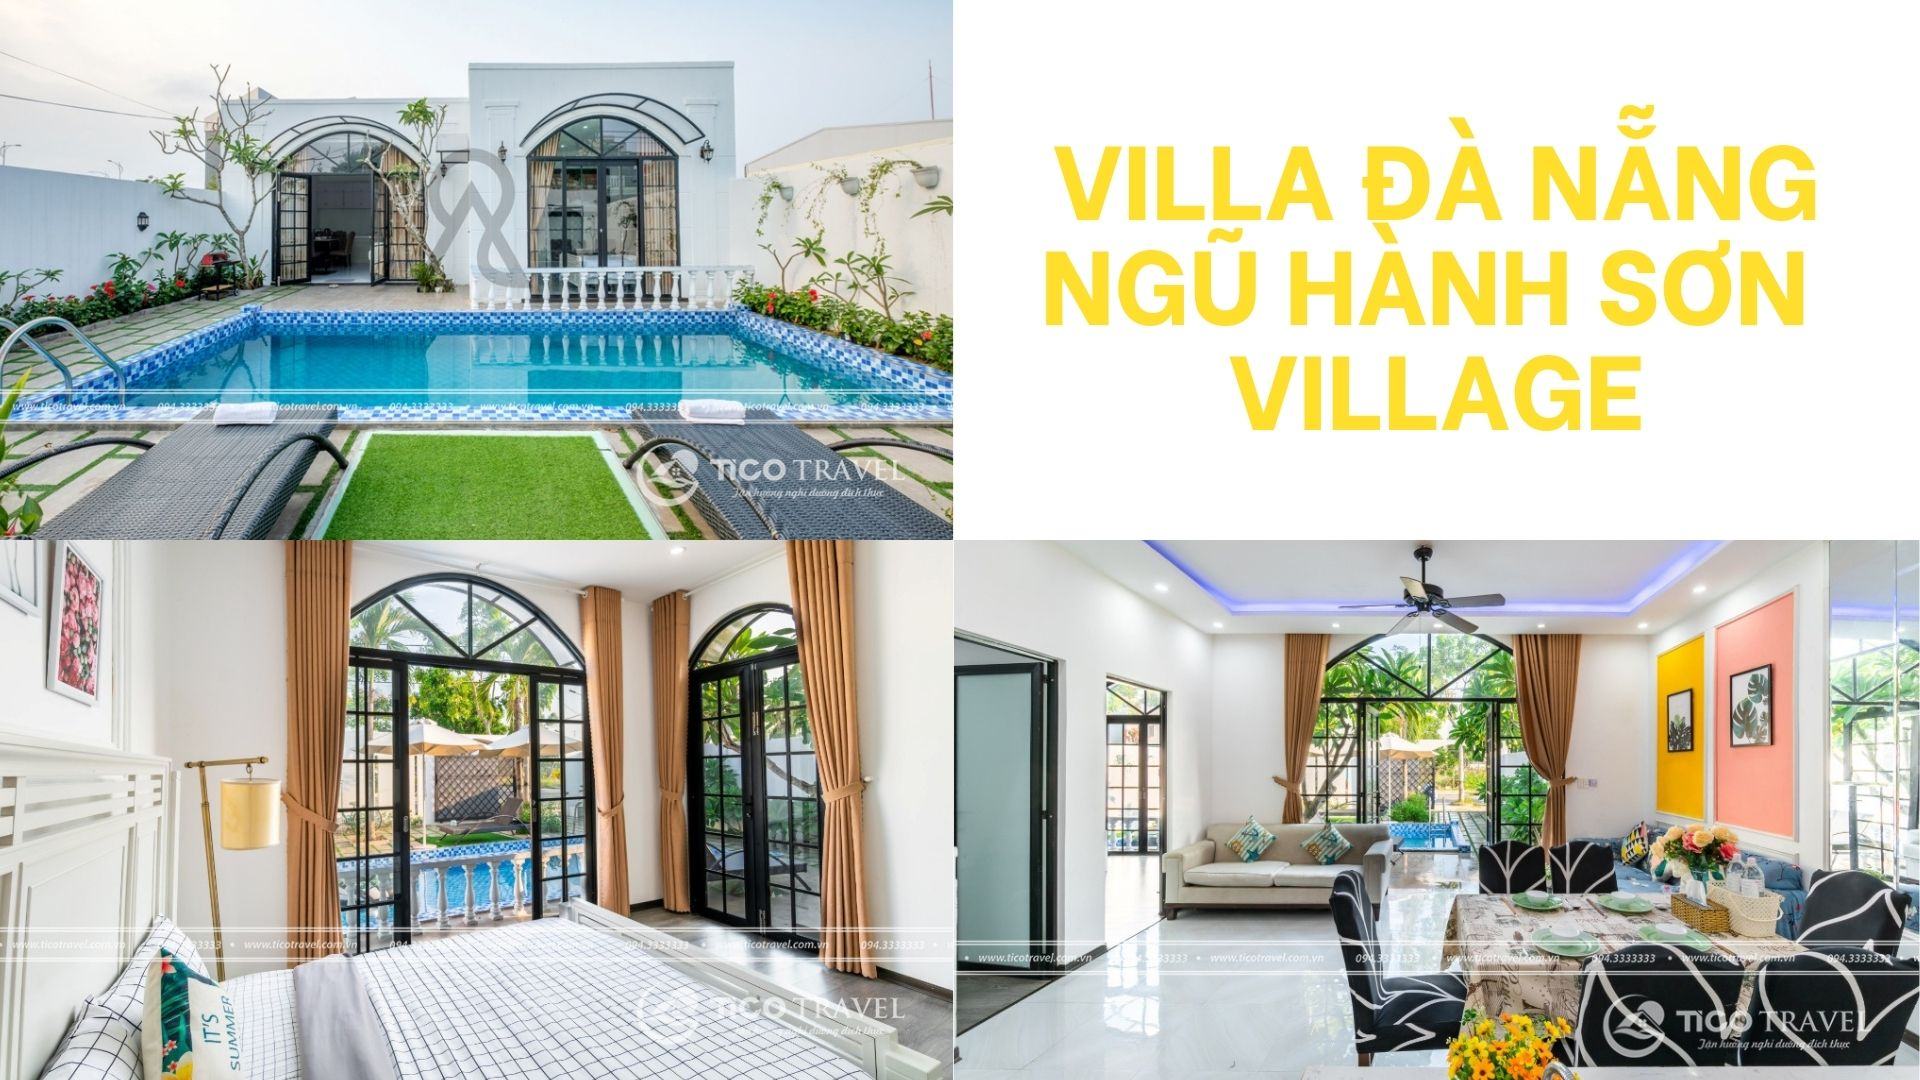 ảnh chụp villa Đà Nẵng - Ngũ Hành Sơn Village